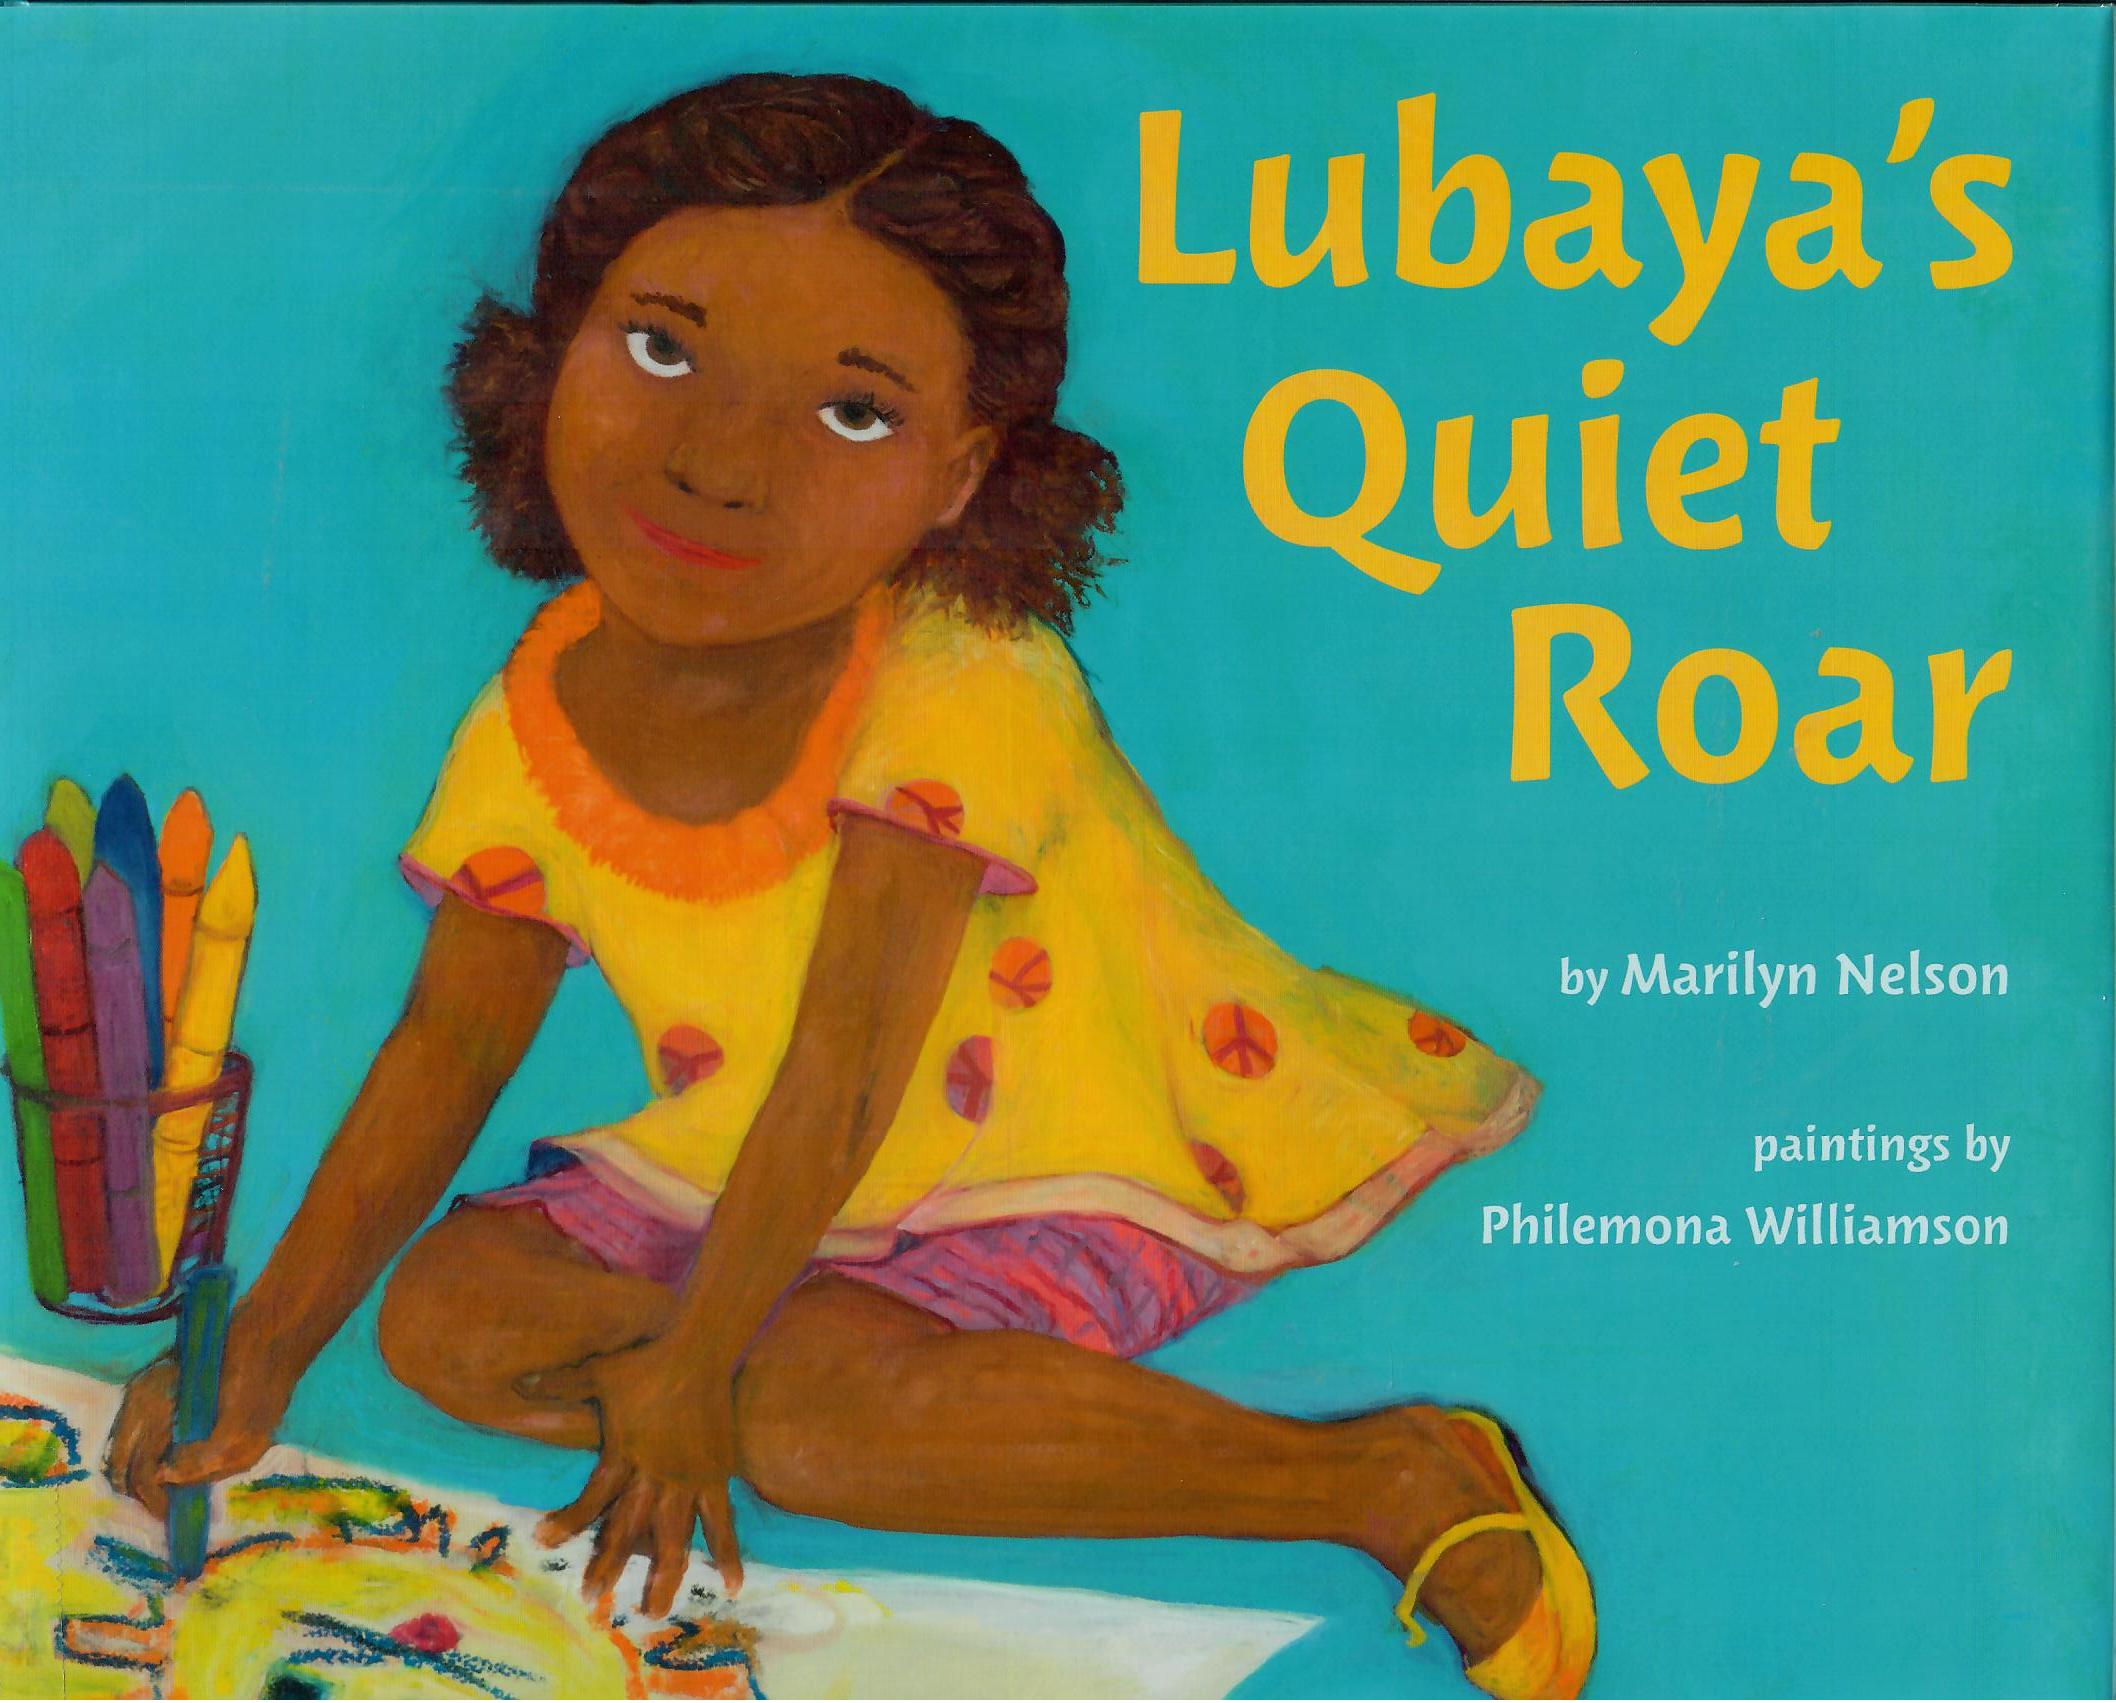 Book jacket of Lubya's Quiet Roar by Marilyn Nelson